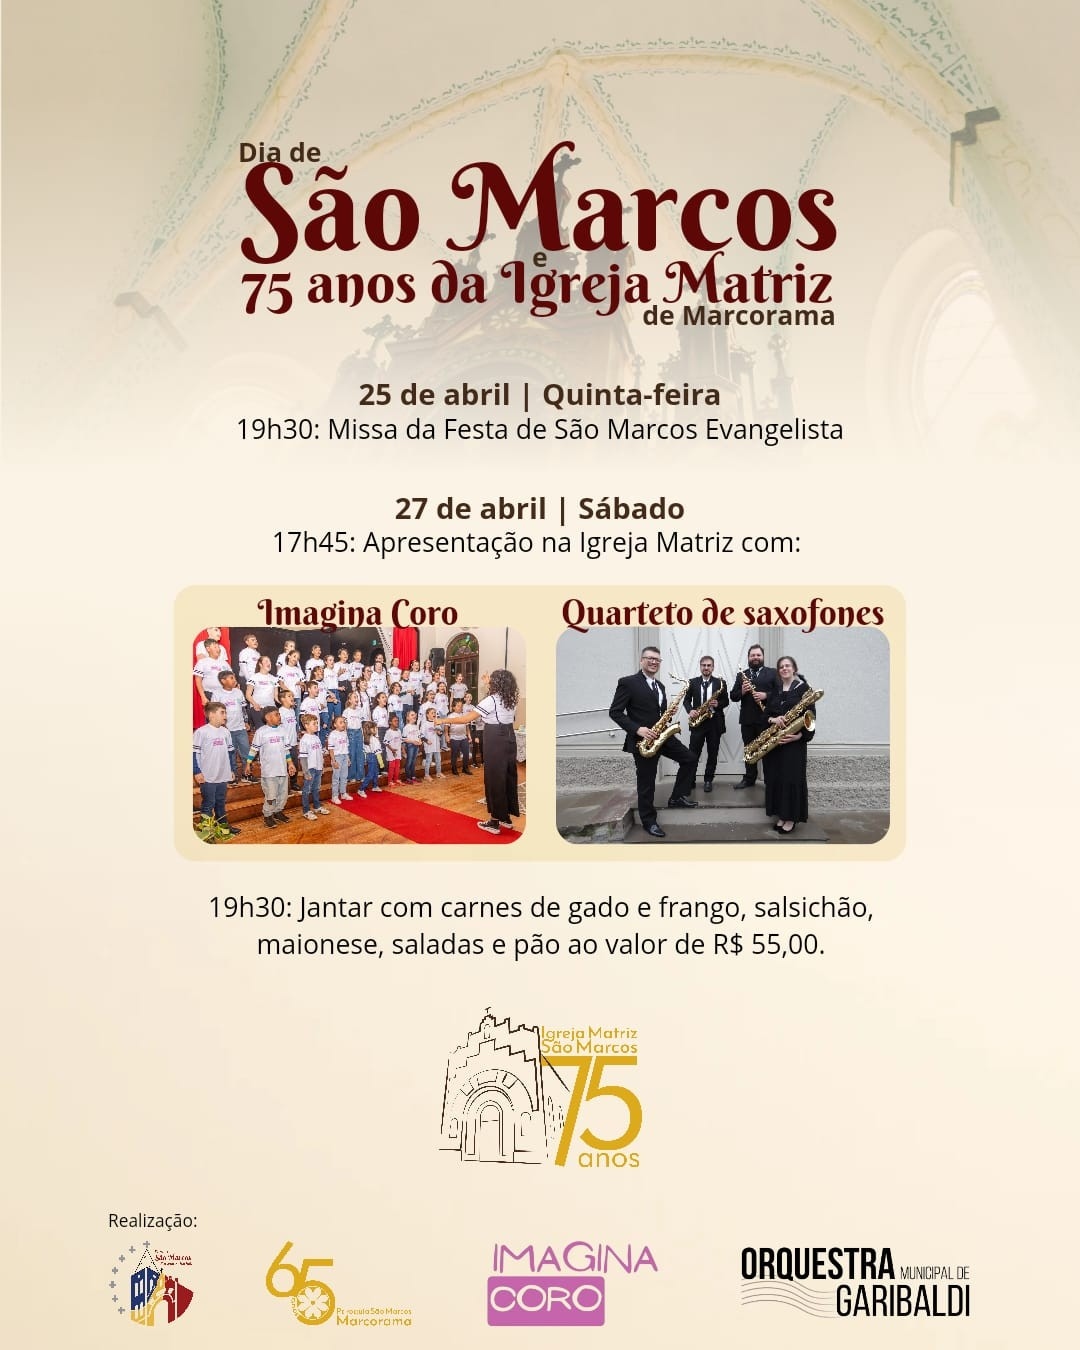 Paróquia de Marcorama irá celebra o seu padroeiro, São Marcos e os 75 anos da Igreja Matriz